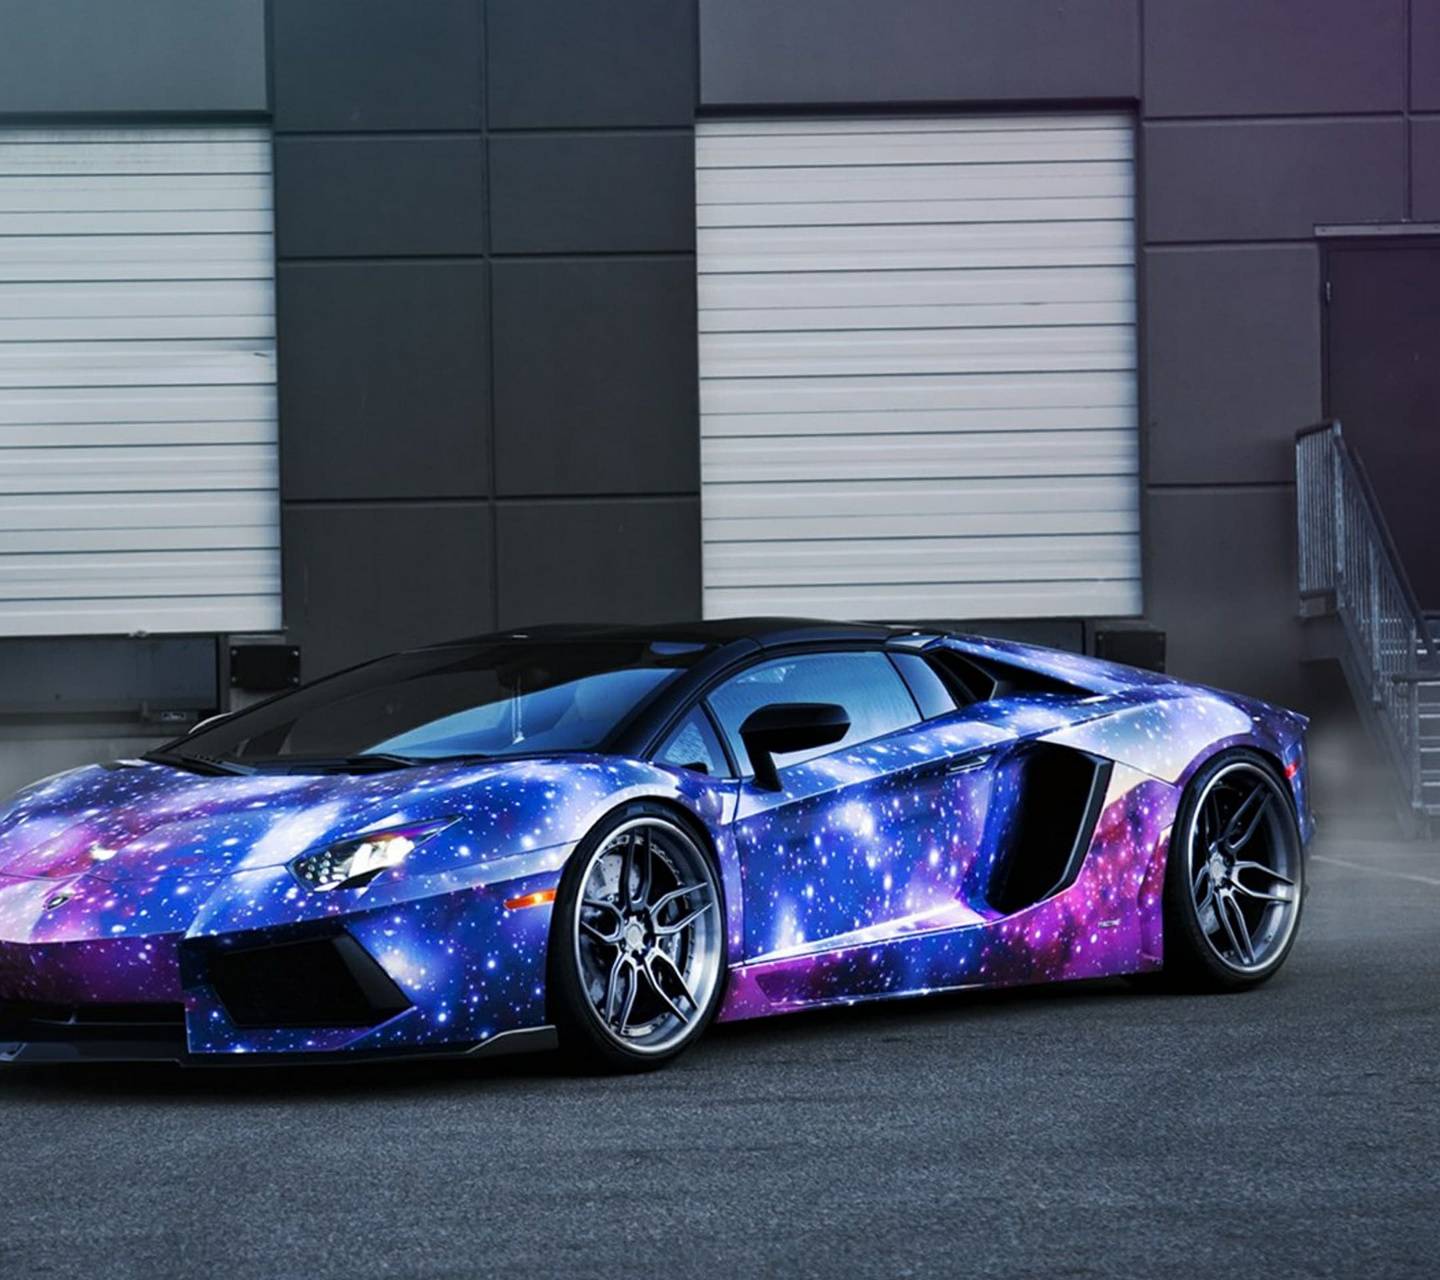 Các fan của Lamborghini đừng bỏ lỡ bức hình nền Lamborghini Galaxy Wallpapers đầy sức hấp dẫn này. Vật liệu kim cương của đồng hồ, cùng những chi tiết hoàn hảo sẽ khiến bạn ngất ngây. Hãy cùng khám phá và trải nghiệm.